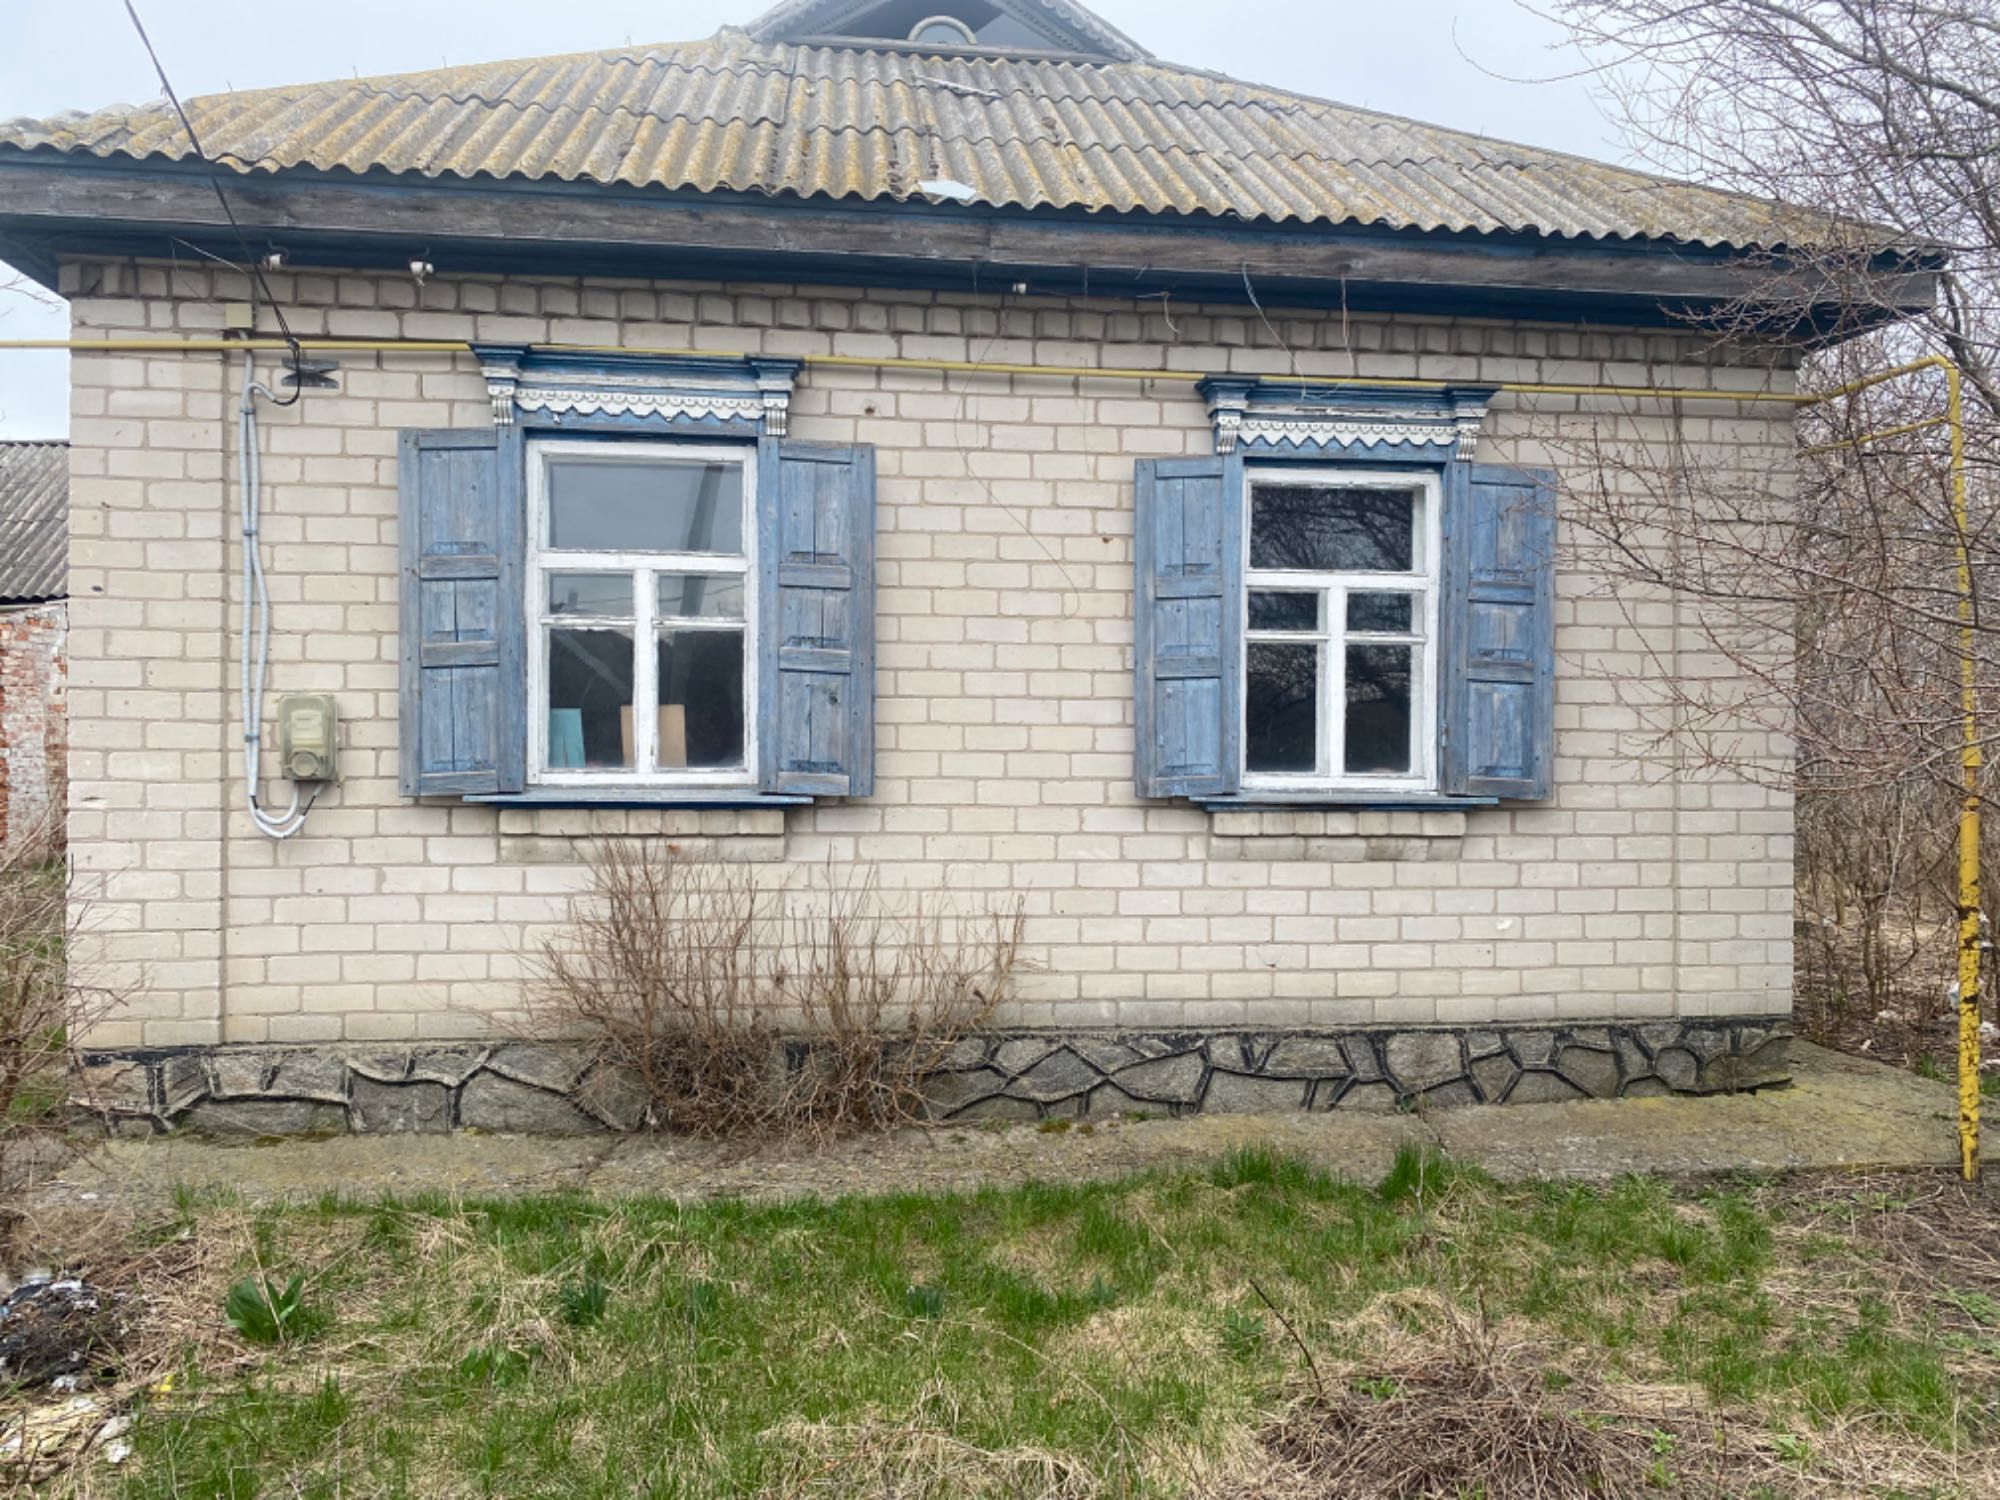 Продам будинок в селі, Онуфріївка .Кіровоградська область.